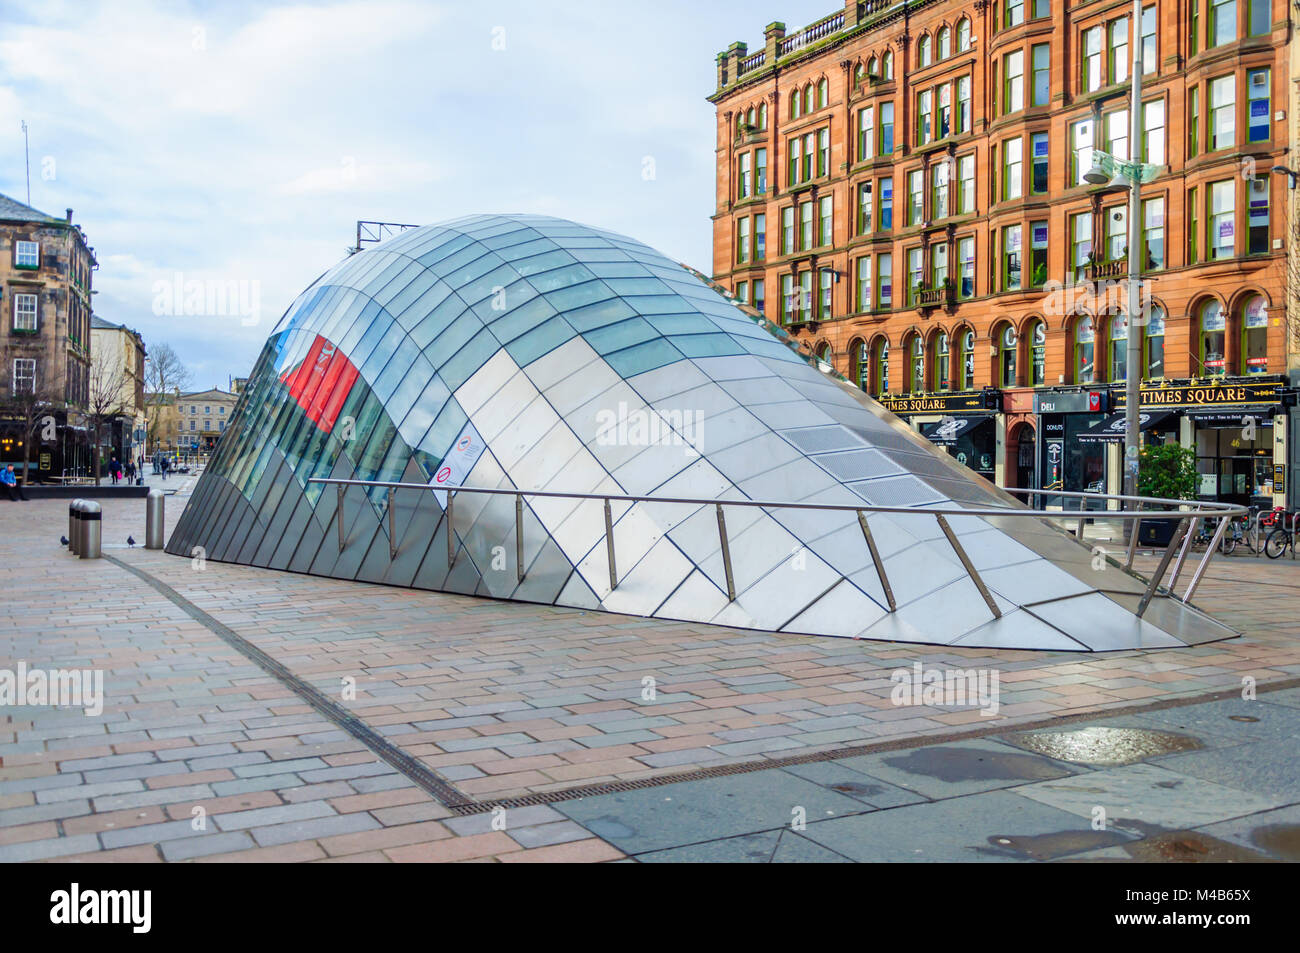 La conception moderne de l'auvent de verre et d'acier à l'entrée de la station de métro St Enoch à St Enoch Square, Glasgow, Écosse, Royaume-Uni Banque D'Images